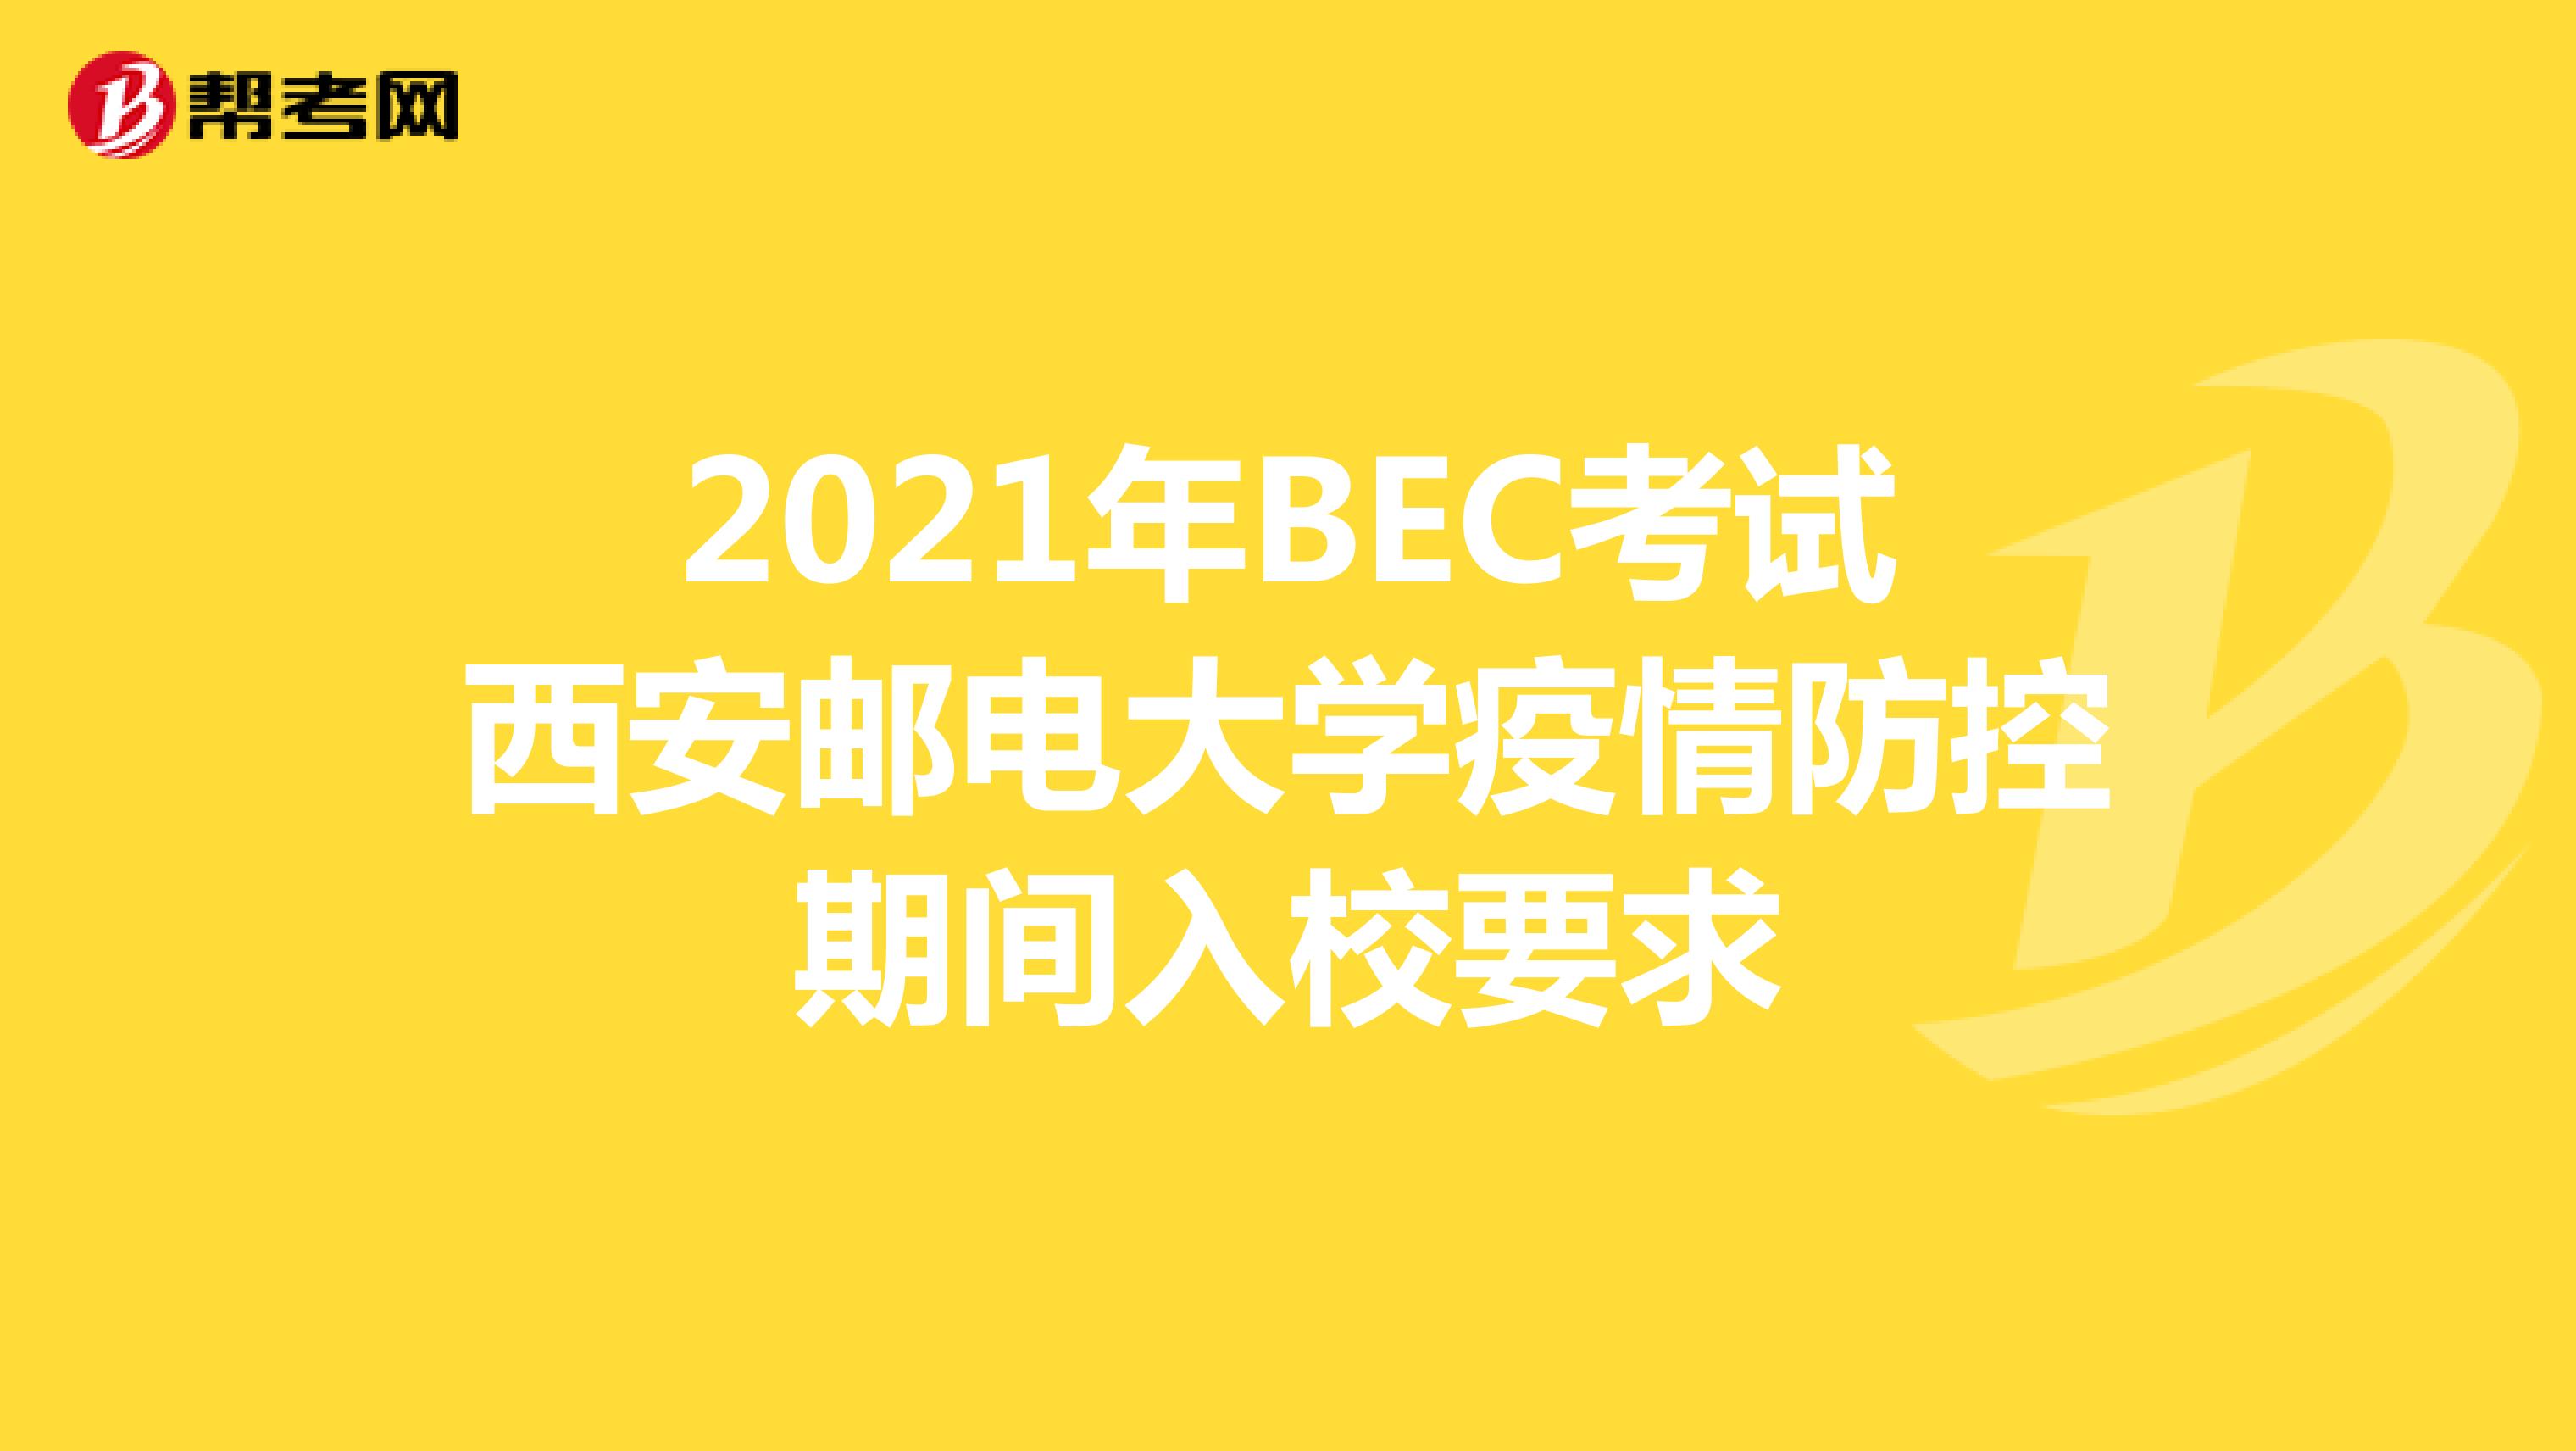 2021年BEC考试西安邮电大学疫情防控期间入校要求